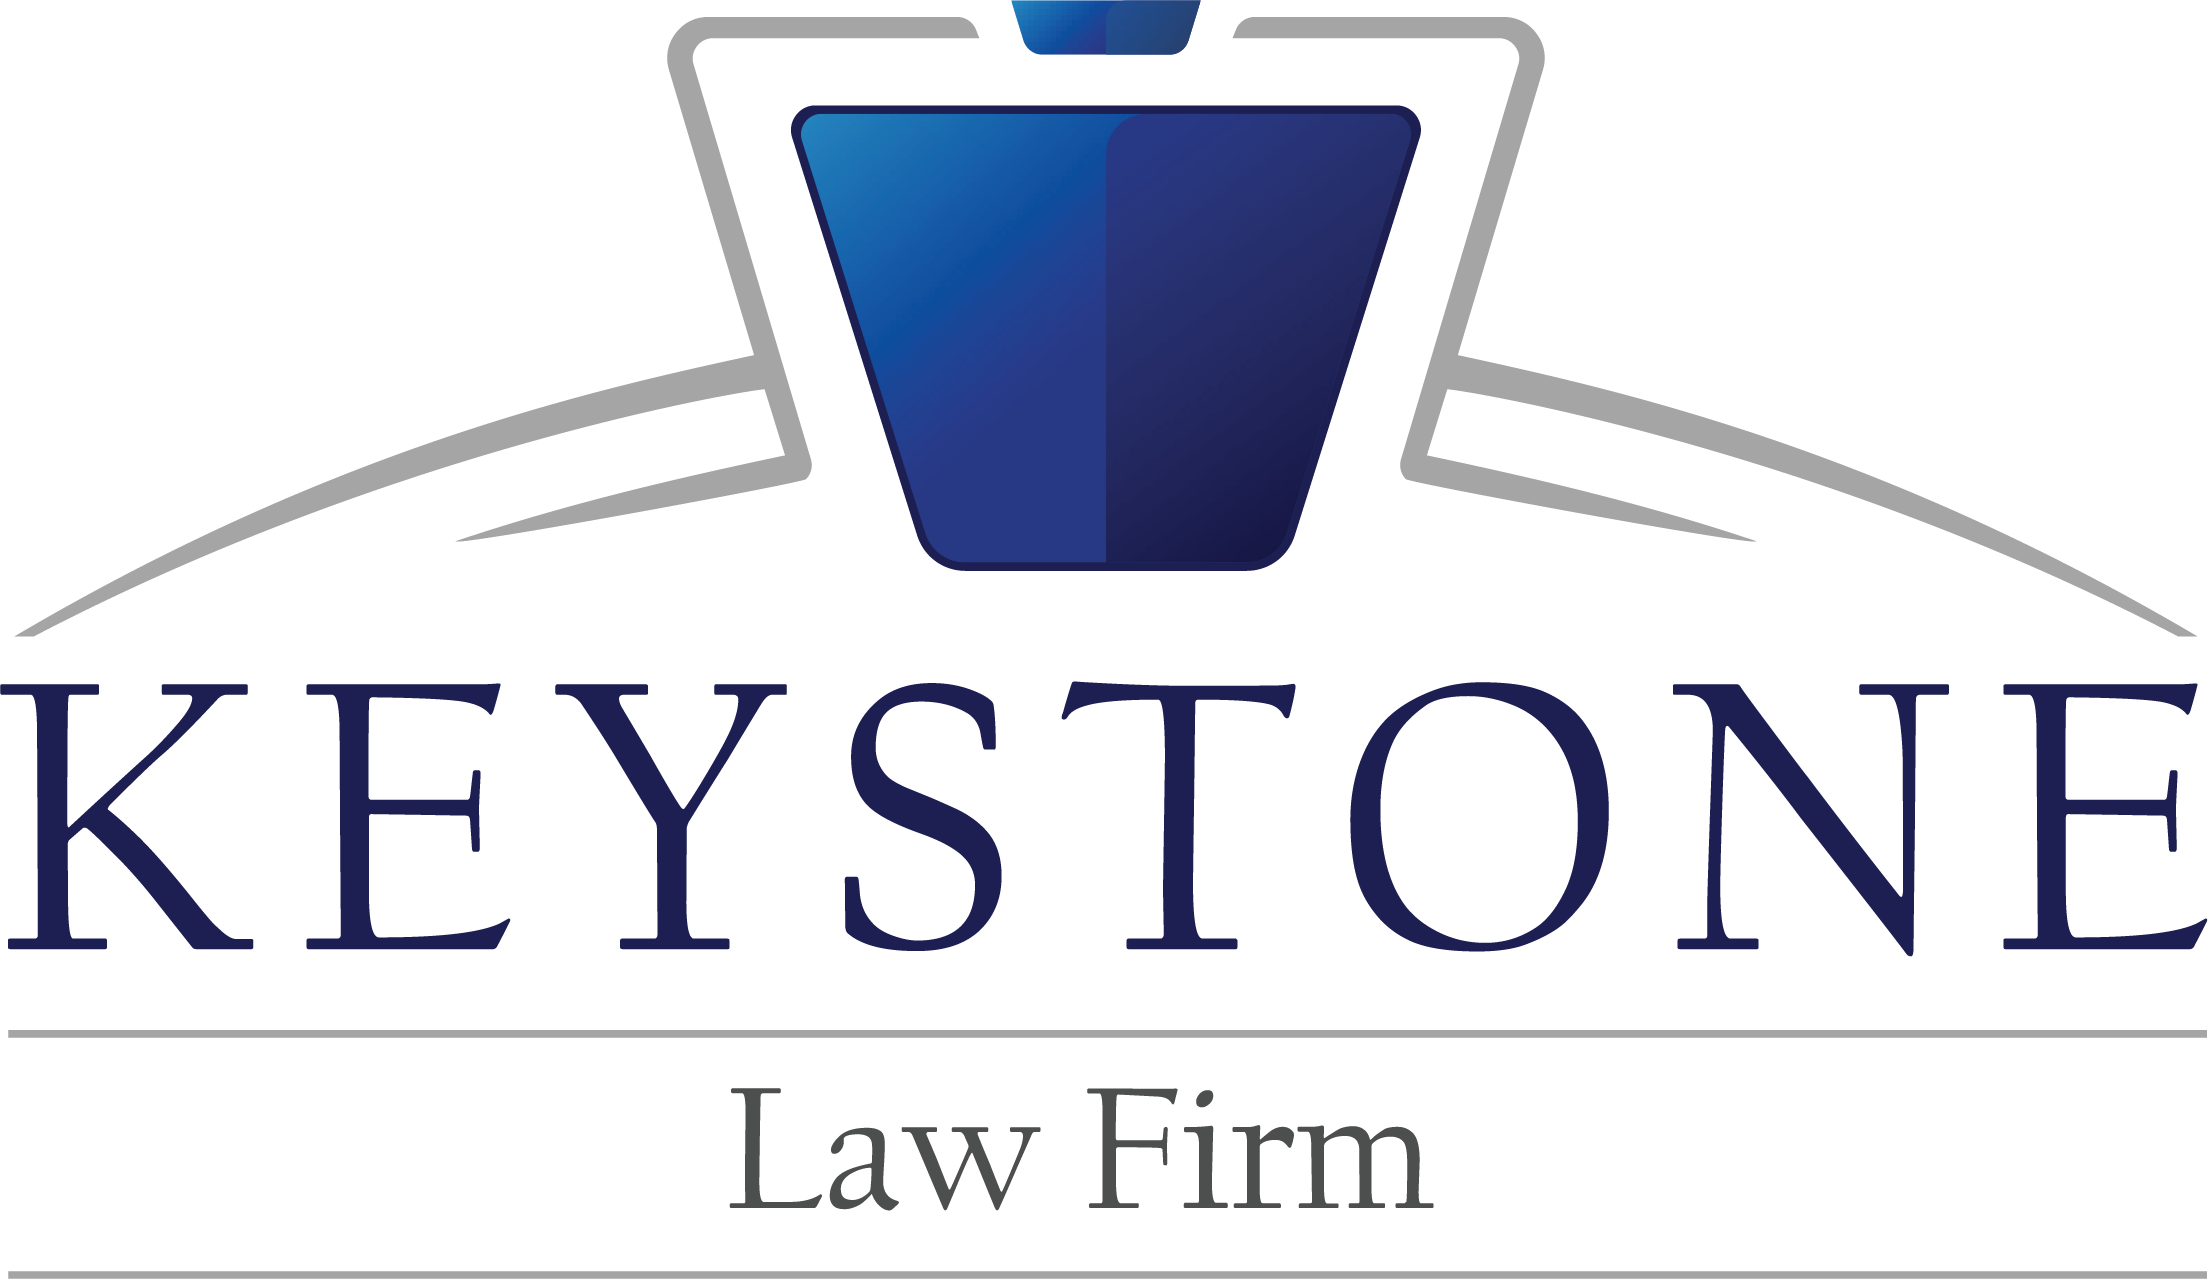 Estate Planning Attorney | Keystone Law Firm Logo